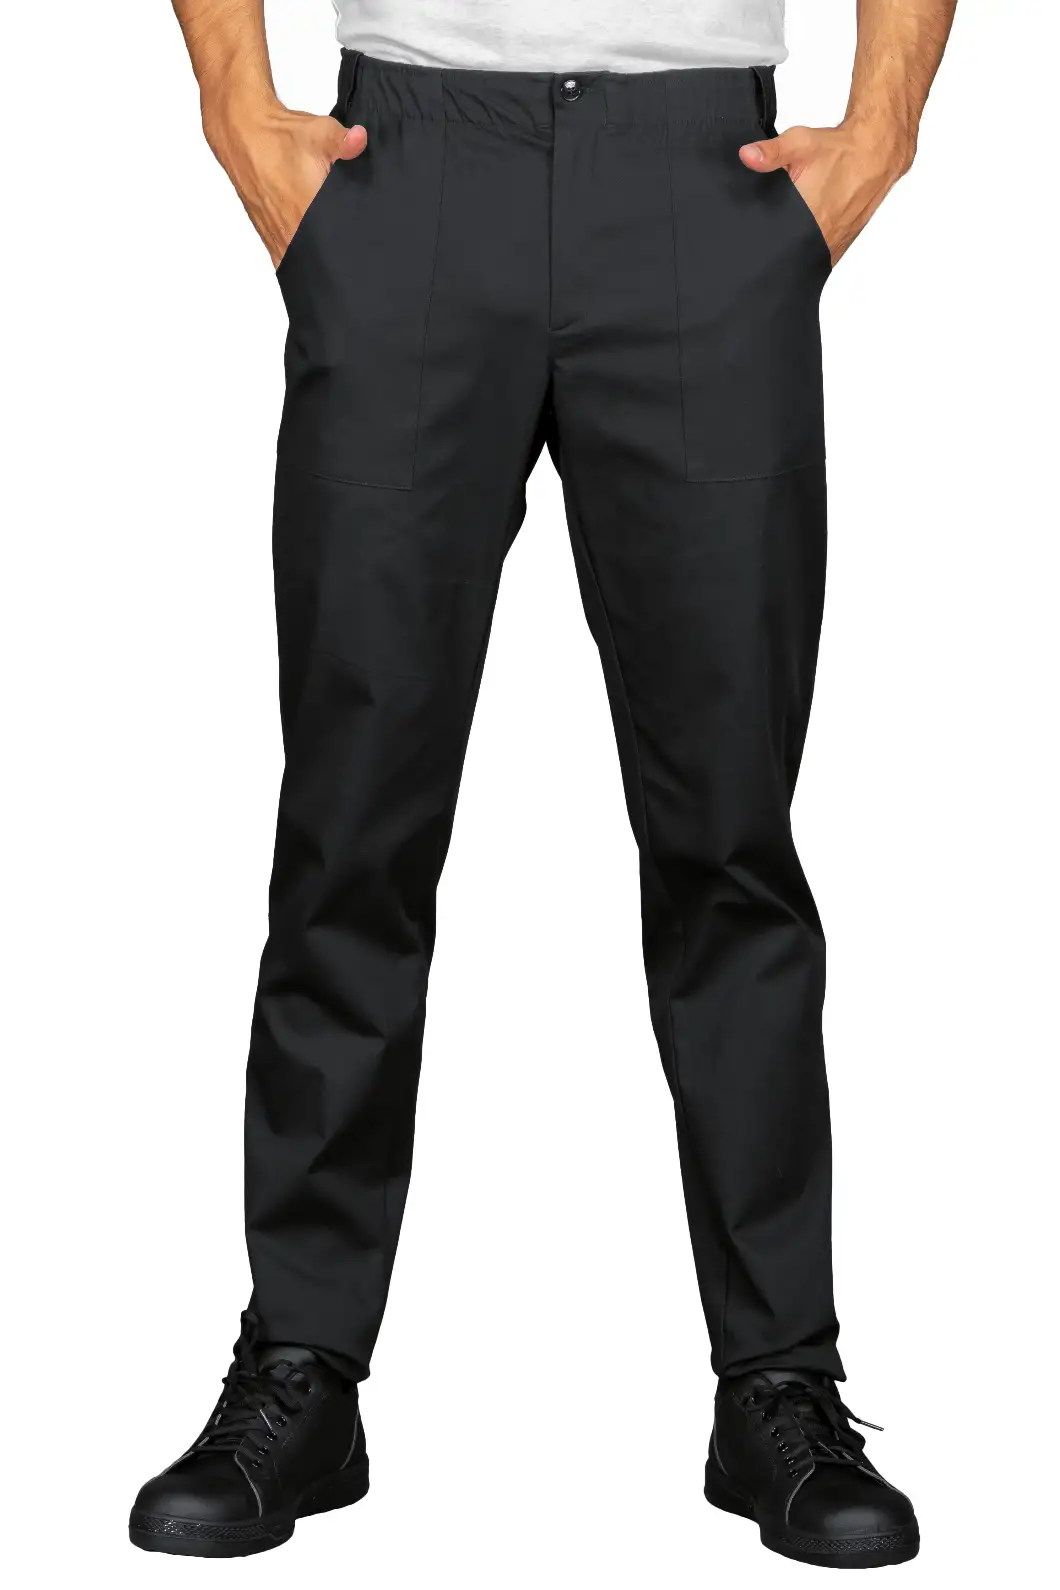 Pantalone da Lavoro Nero per Settore Alimentare, Alberghiero Personalizzato - Isacco